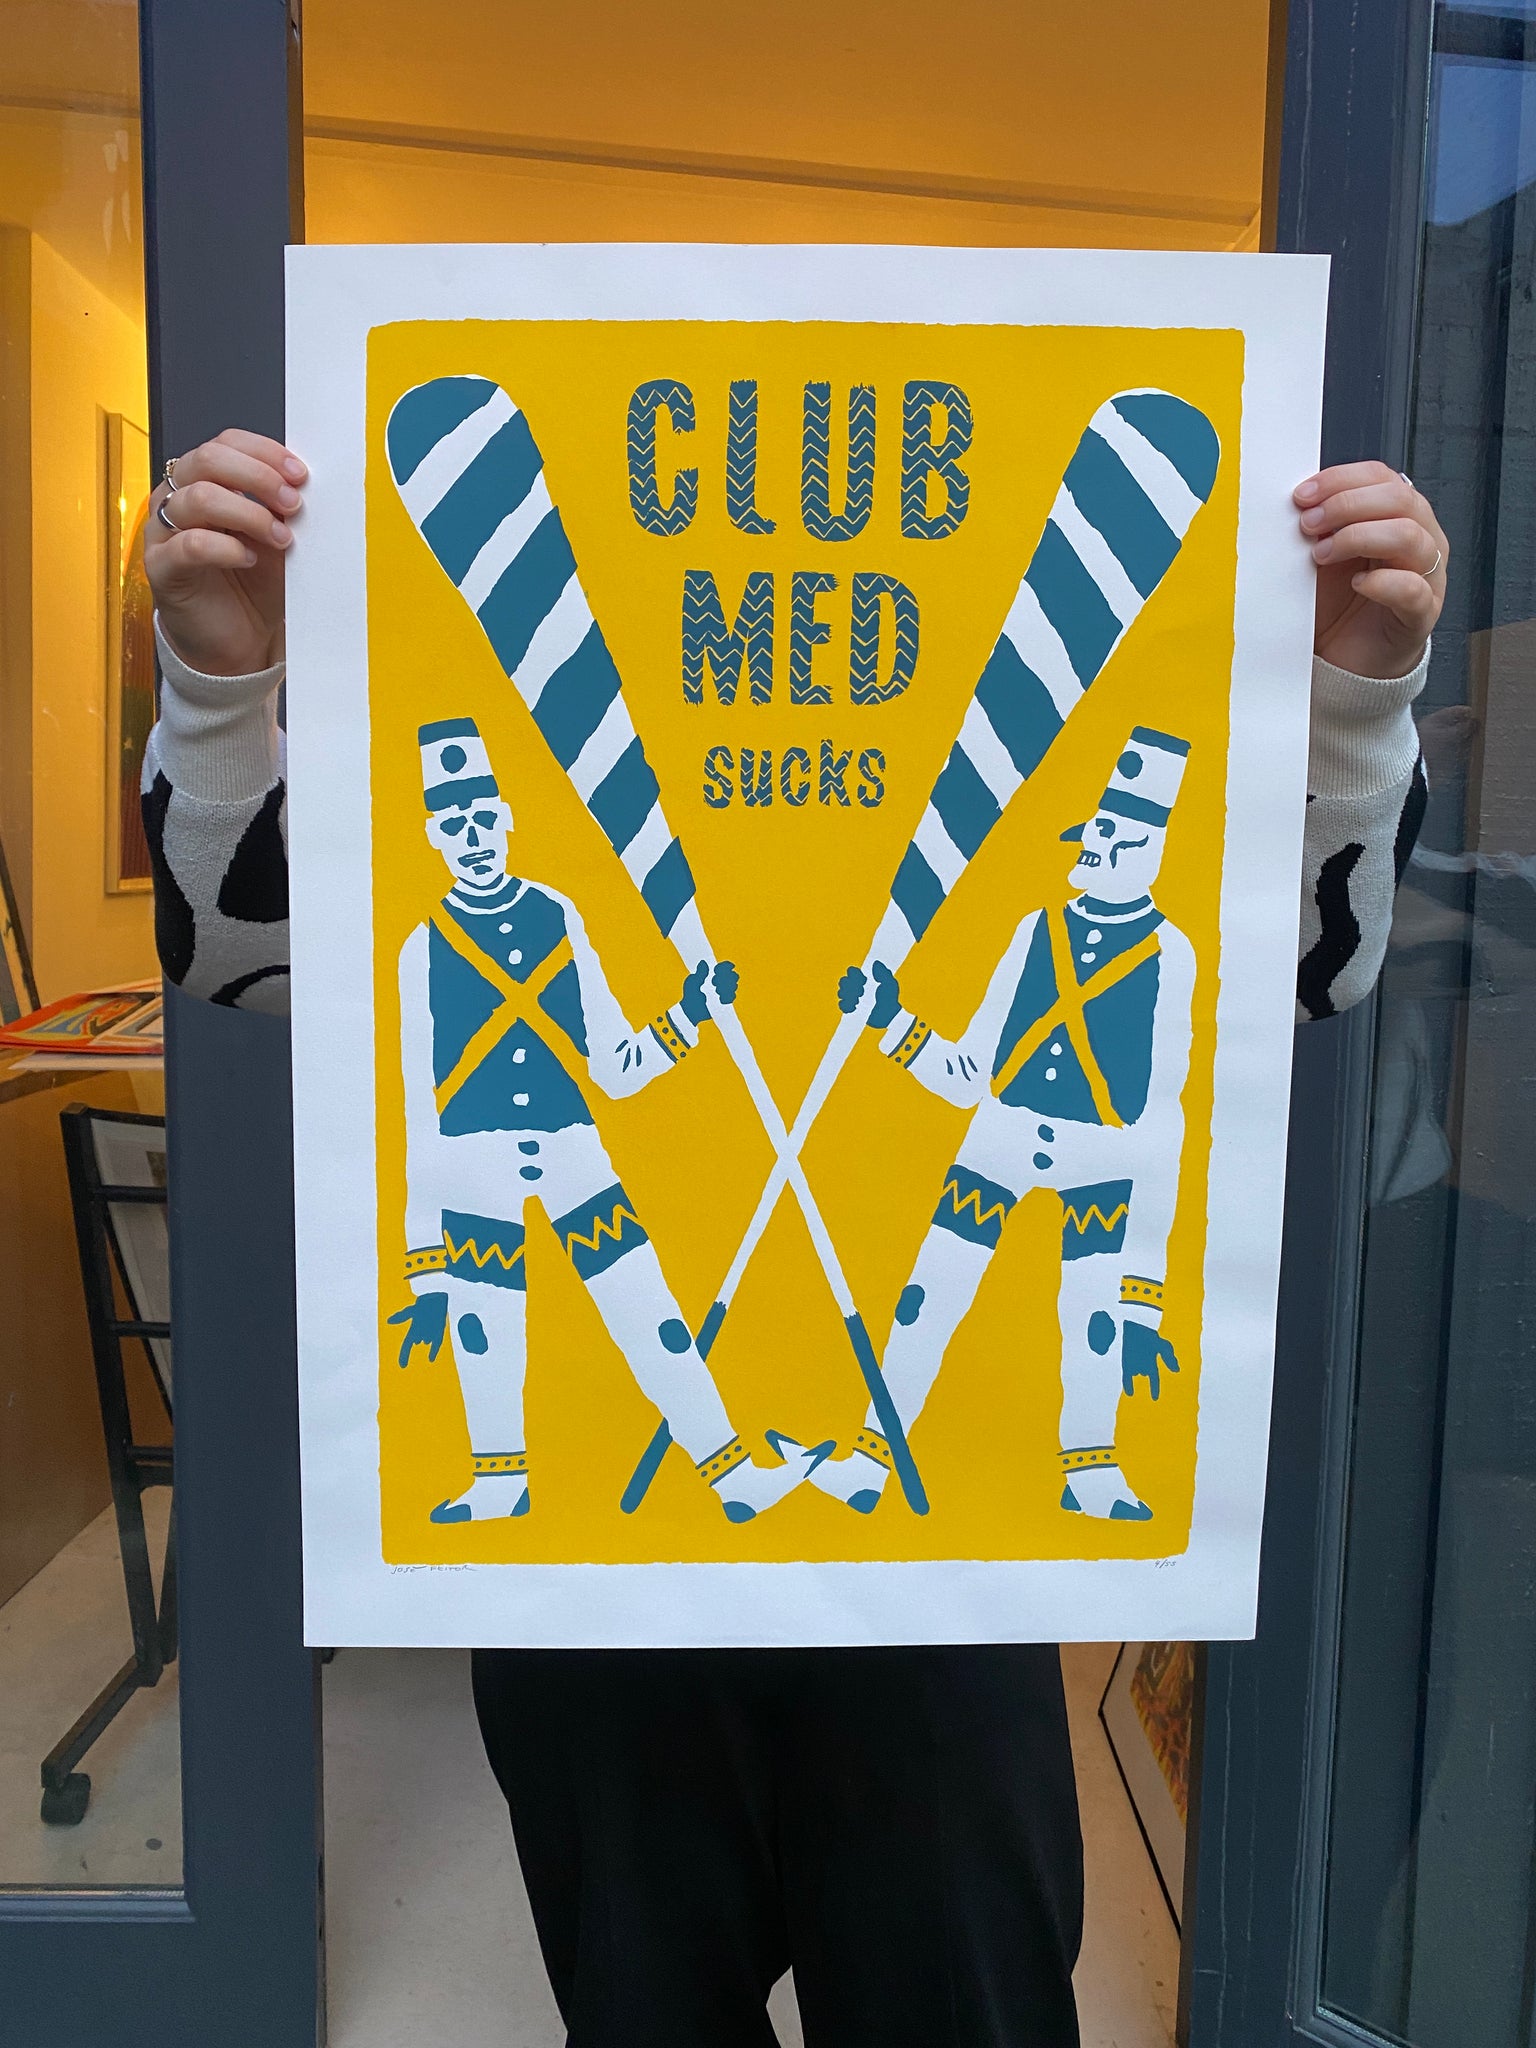 Club Med Sucks